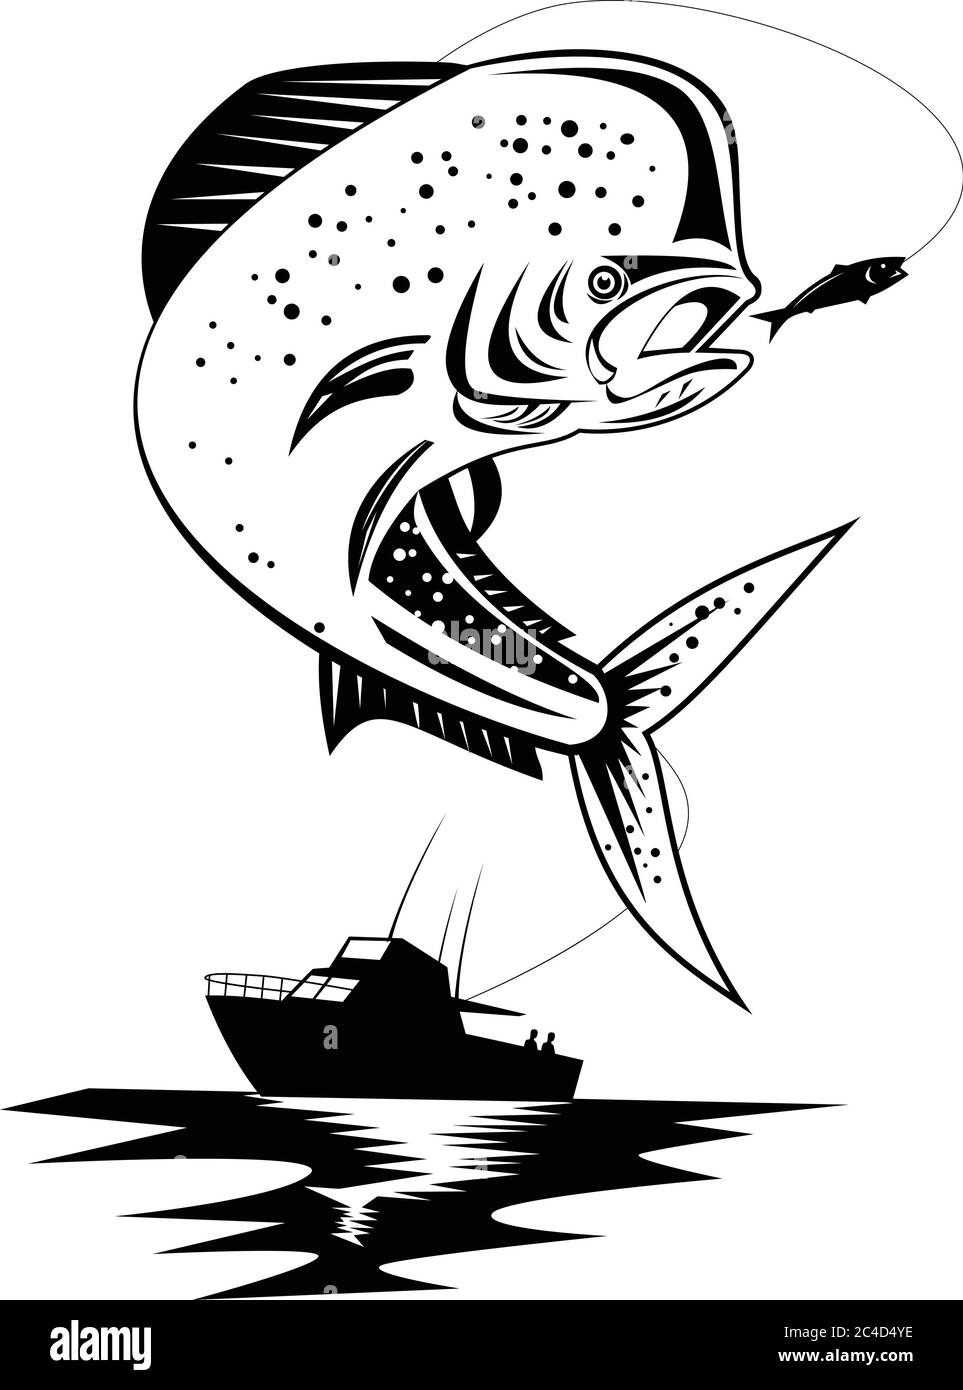 Illustration de style rétro d'un mahi-mahi, dorado ou dolphinish commun Coryphaena hippurus, un poisson à fini en rayon de surface, sautant avec bo de pêche Illustration de Vecteur